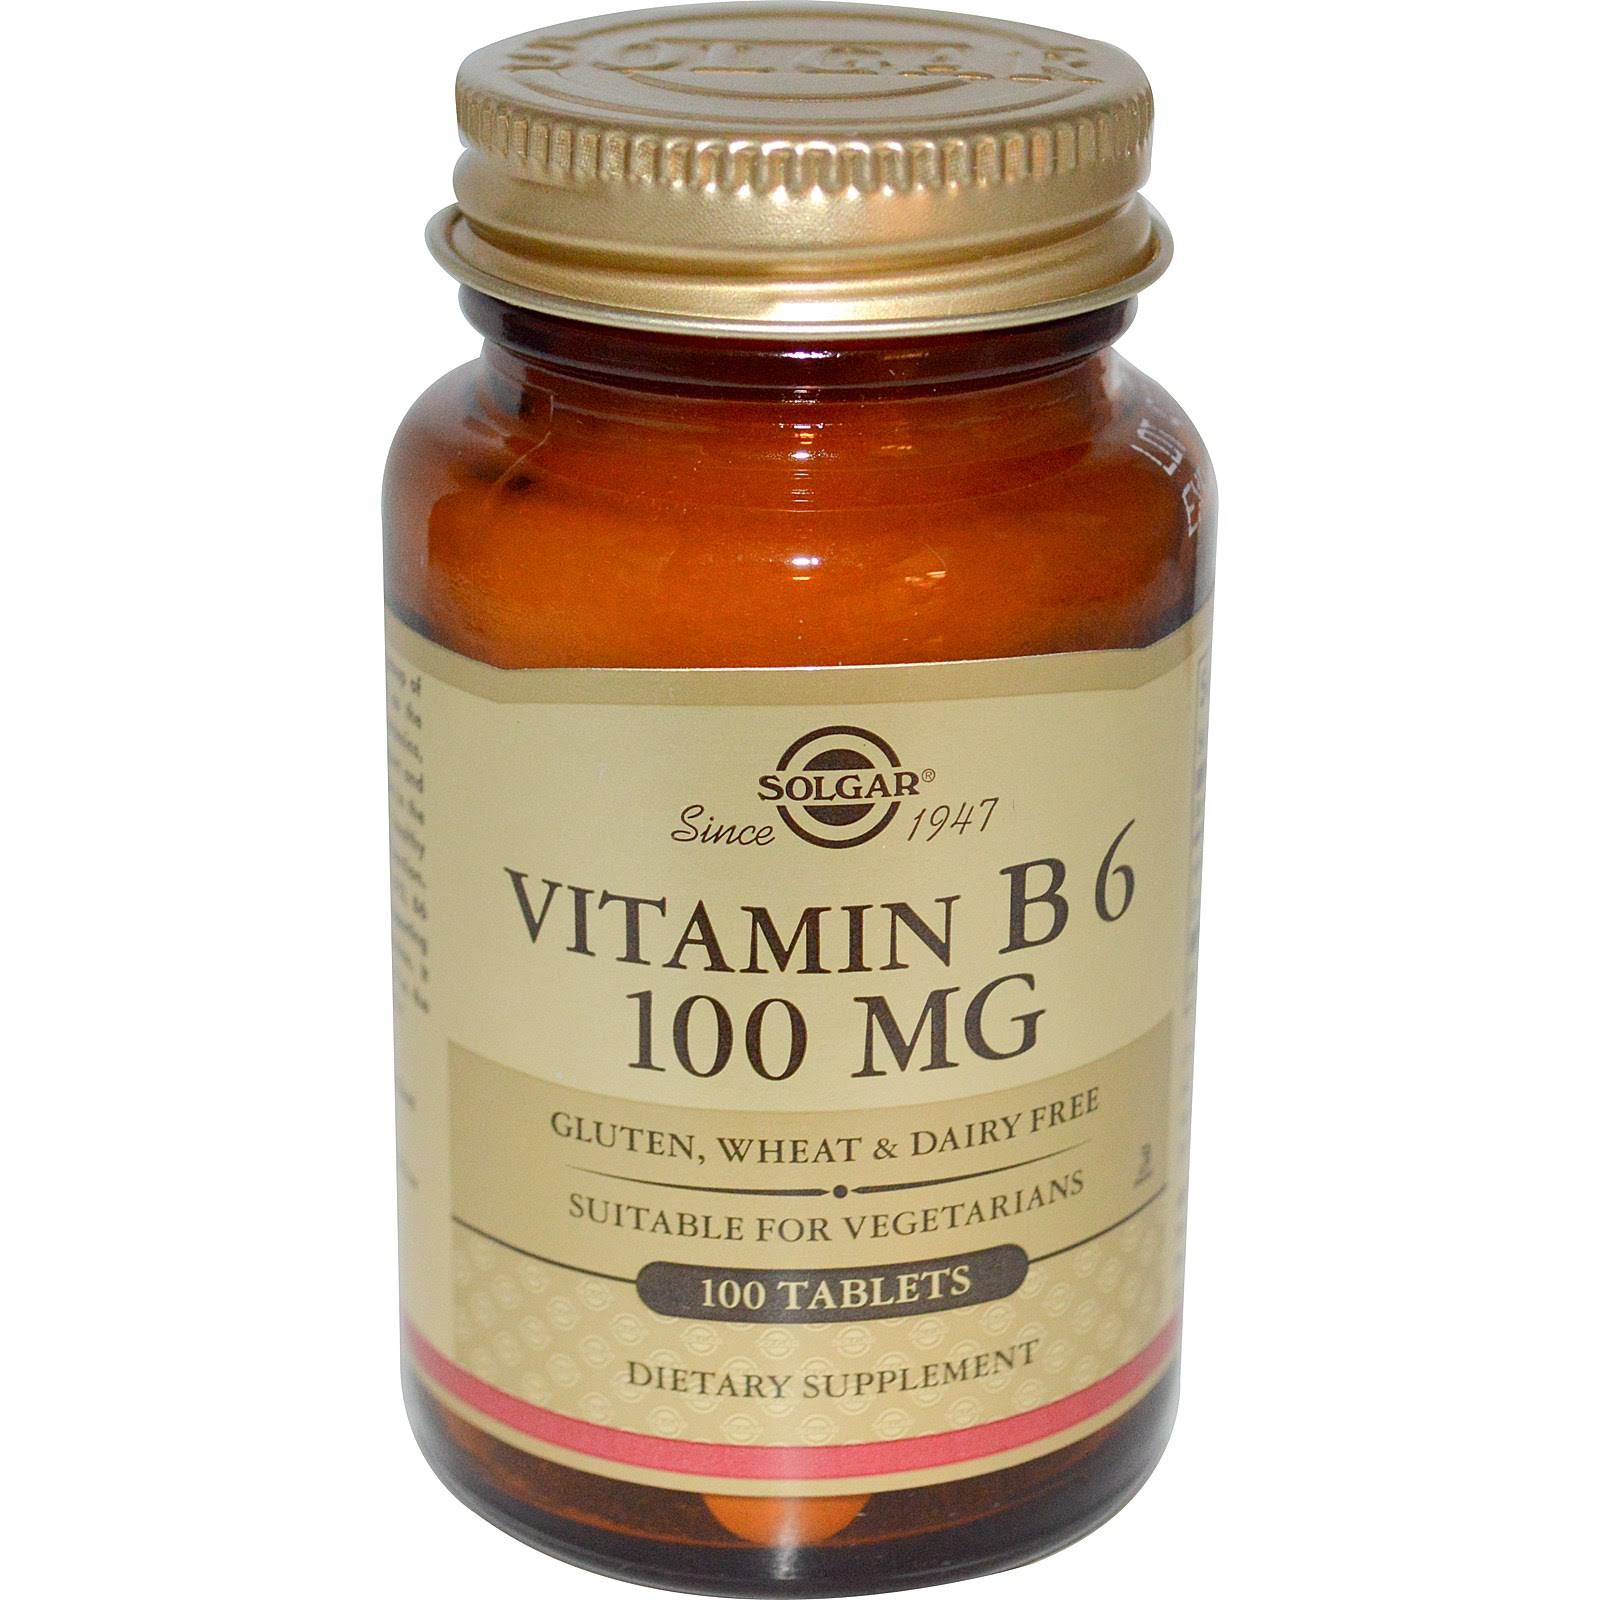 Solgar Vitamin B6 100mg Dietary Supplement - 100 Tablets